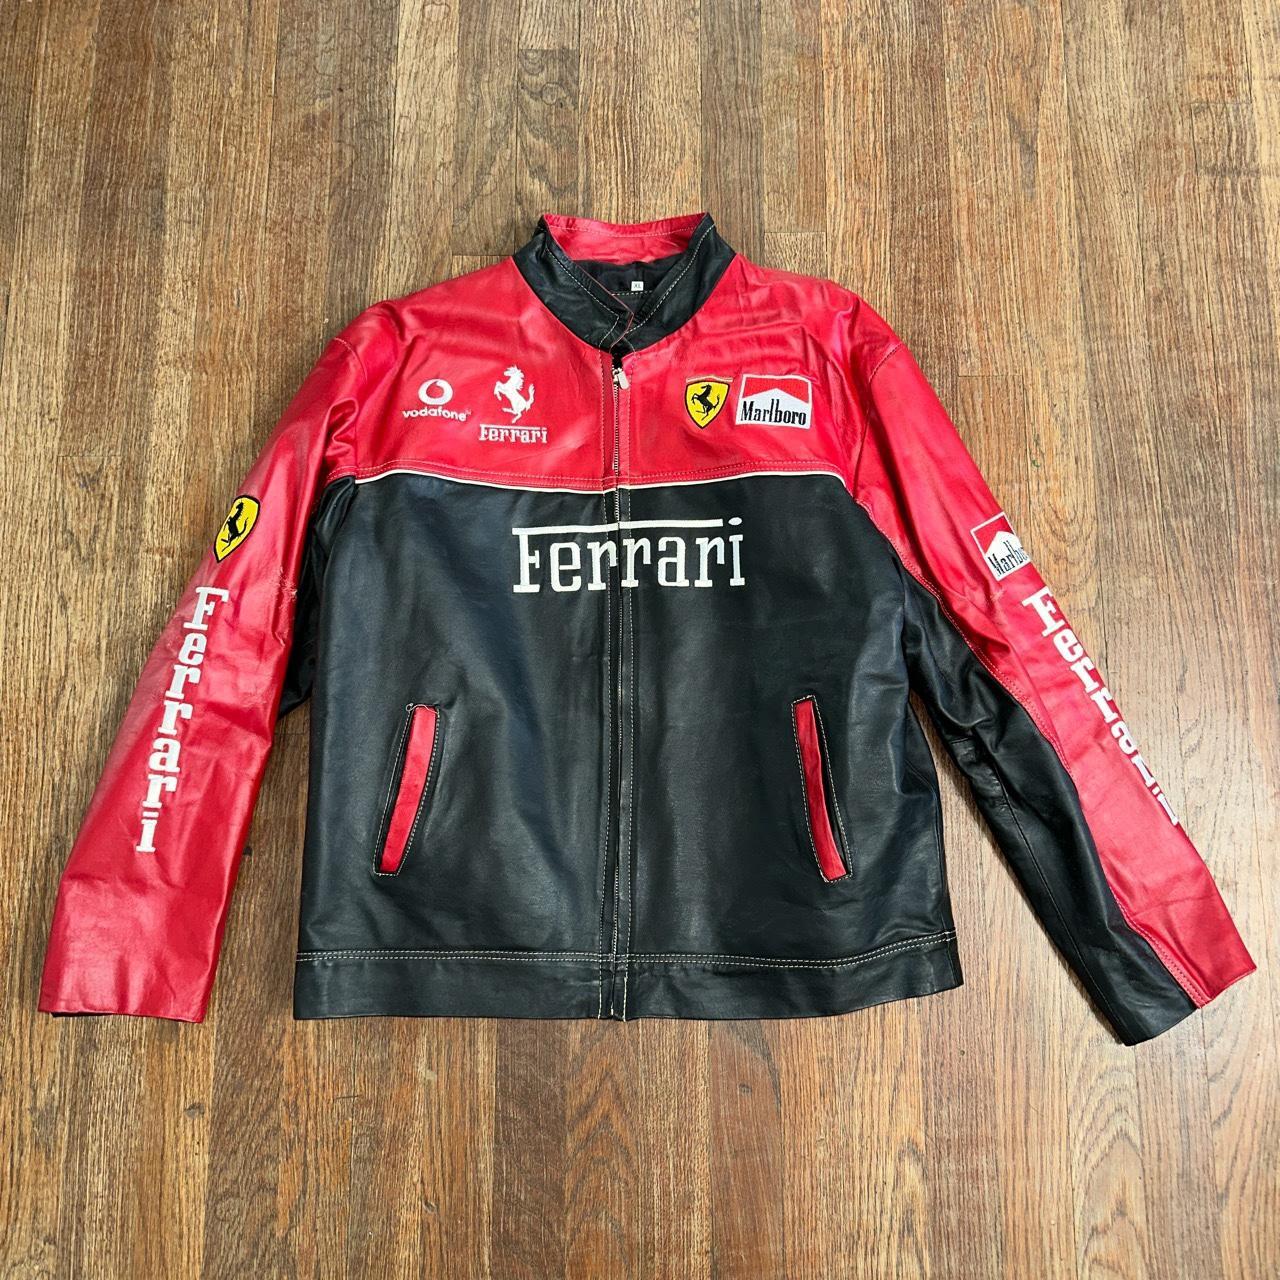 Vintage Nascar leather Red Bull biker jacket. Red, - Depop